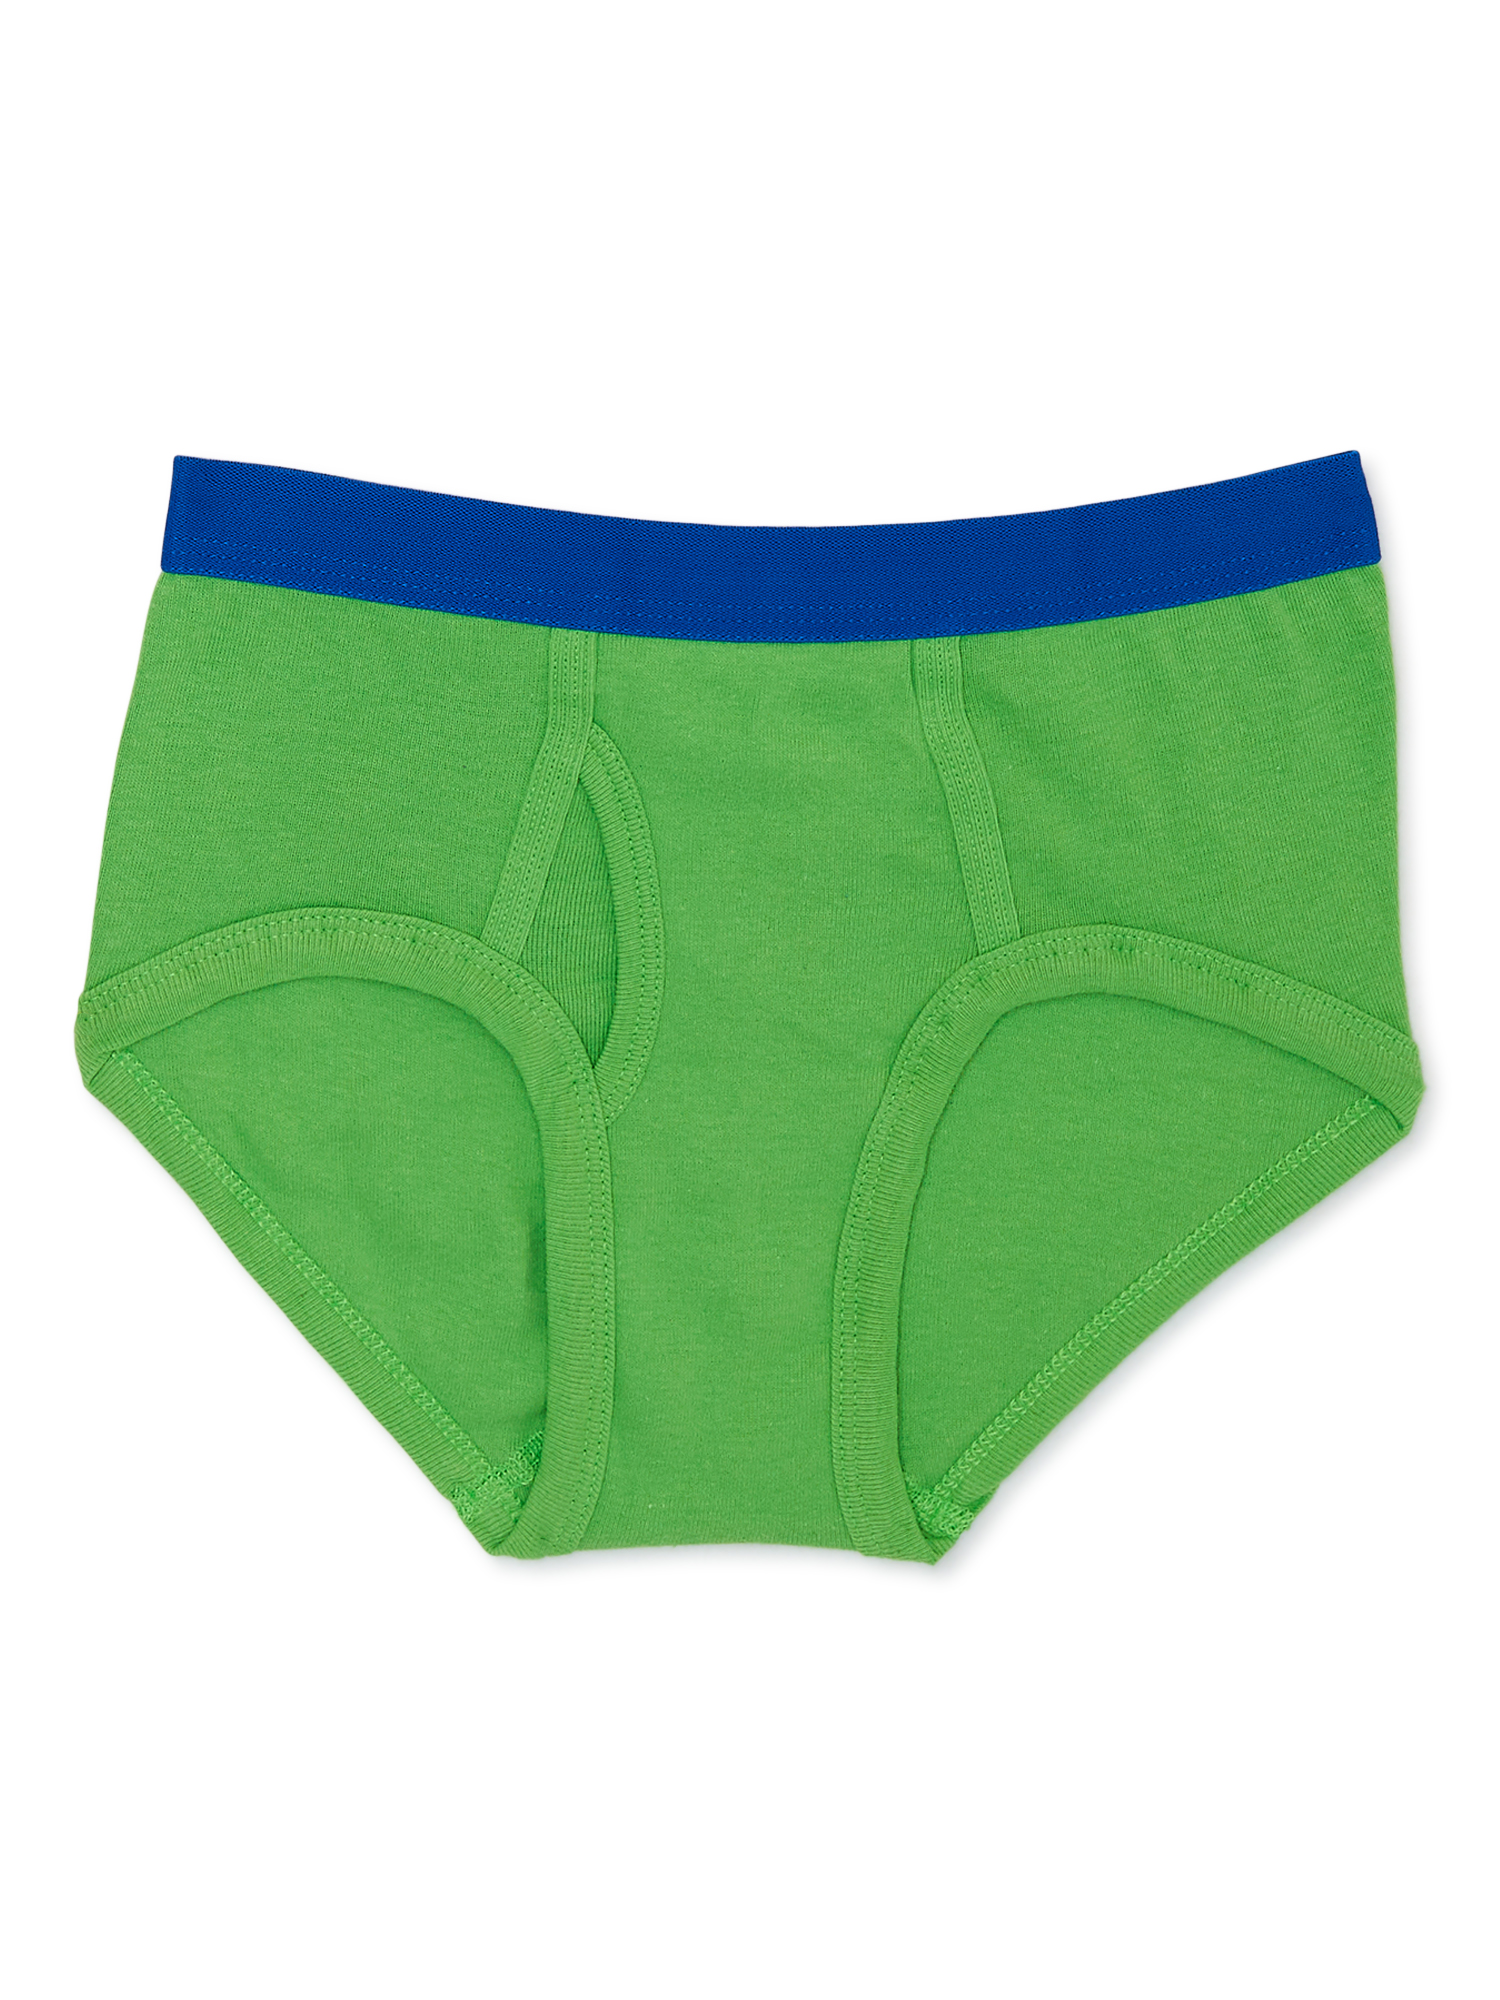 Wonder Nation Boys Brief Underwear, 5-Pack, Sizes S-XL - image 5 of 7